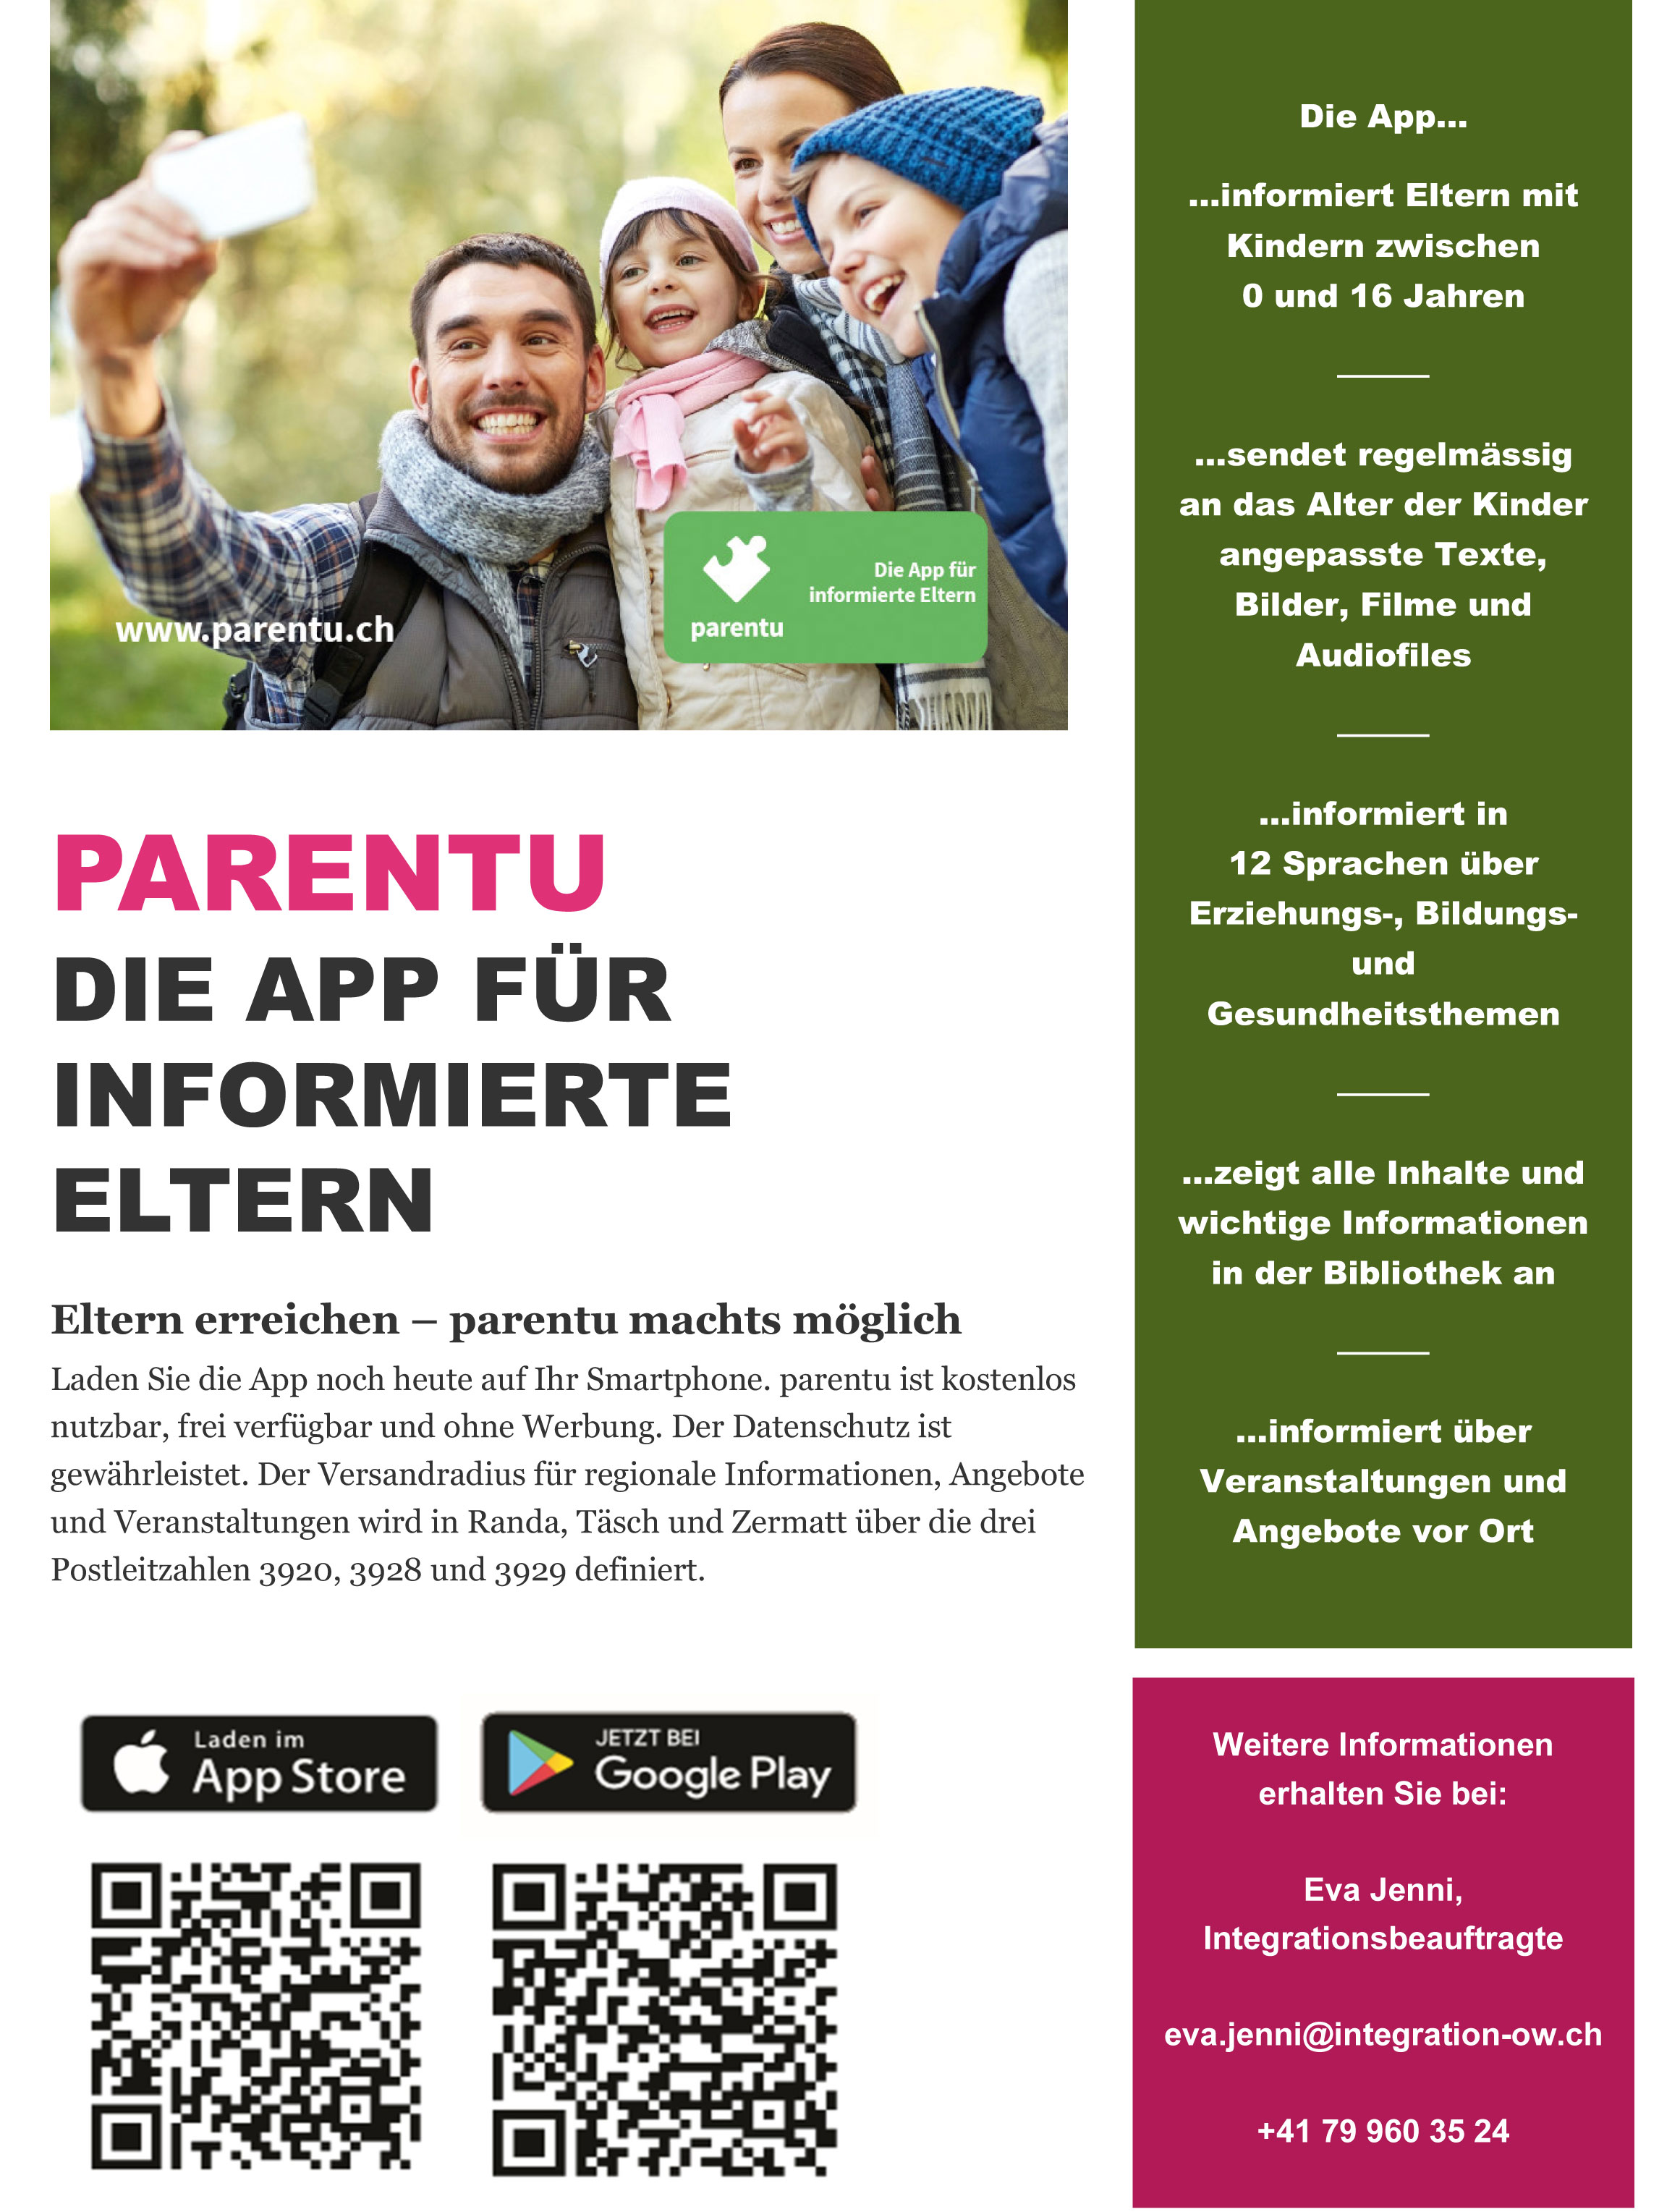 Parentu App - Die App für informierte Eltern